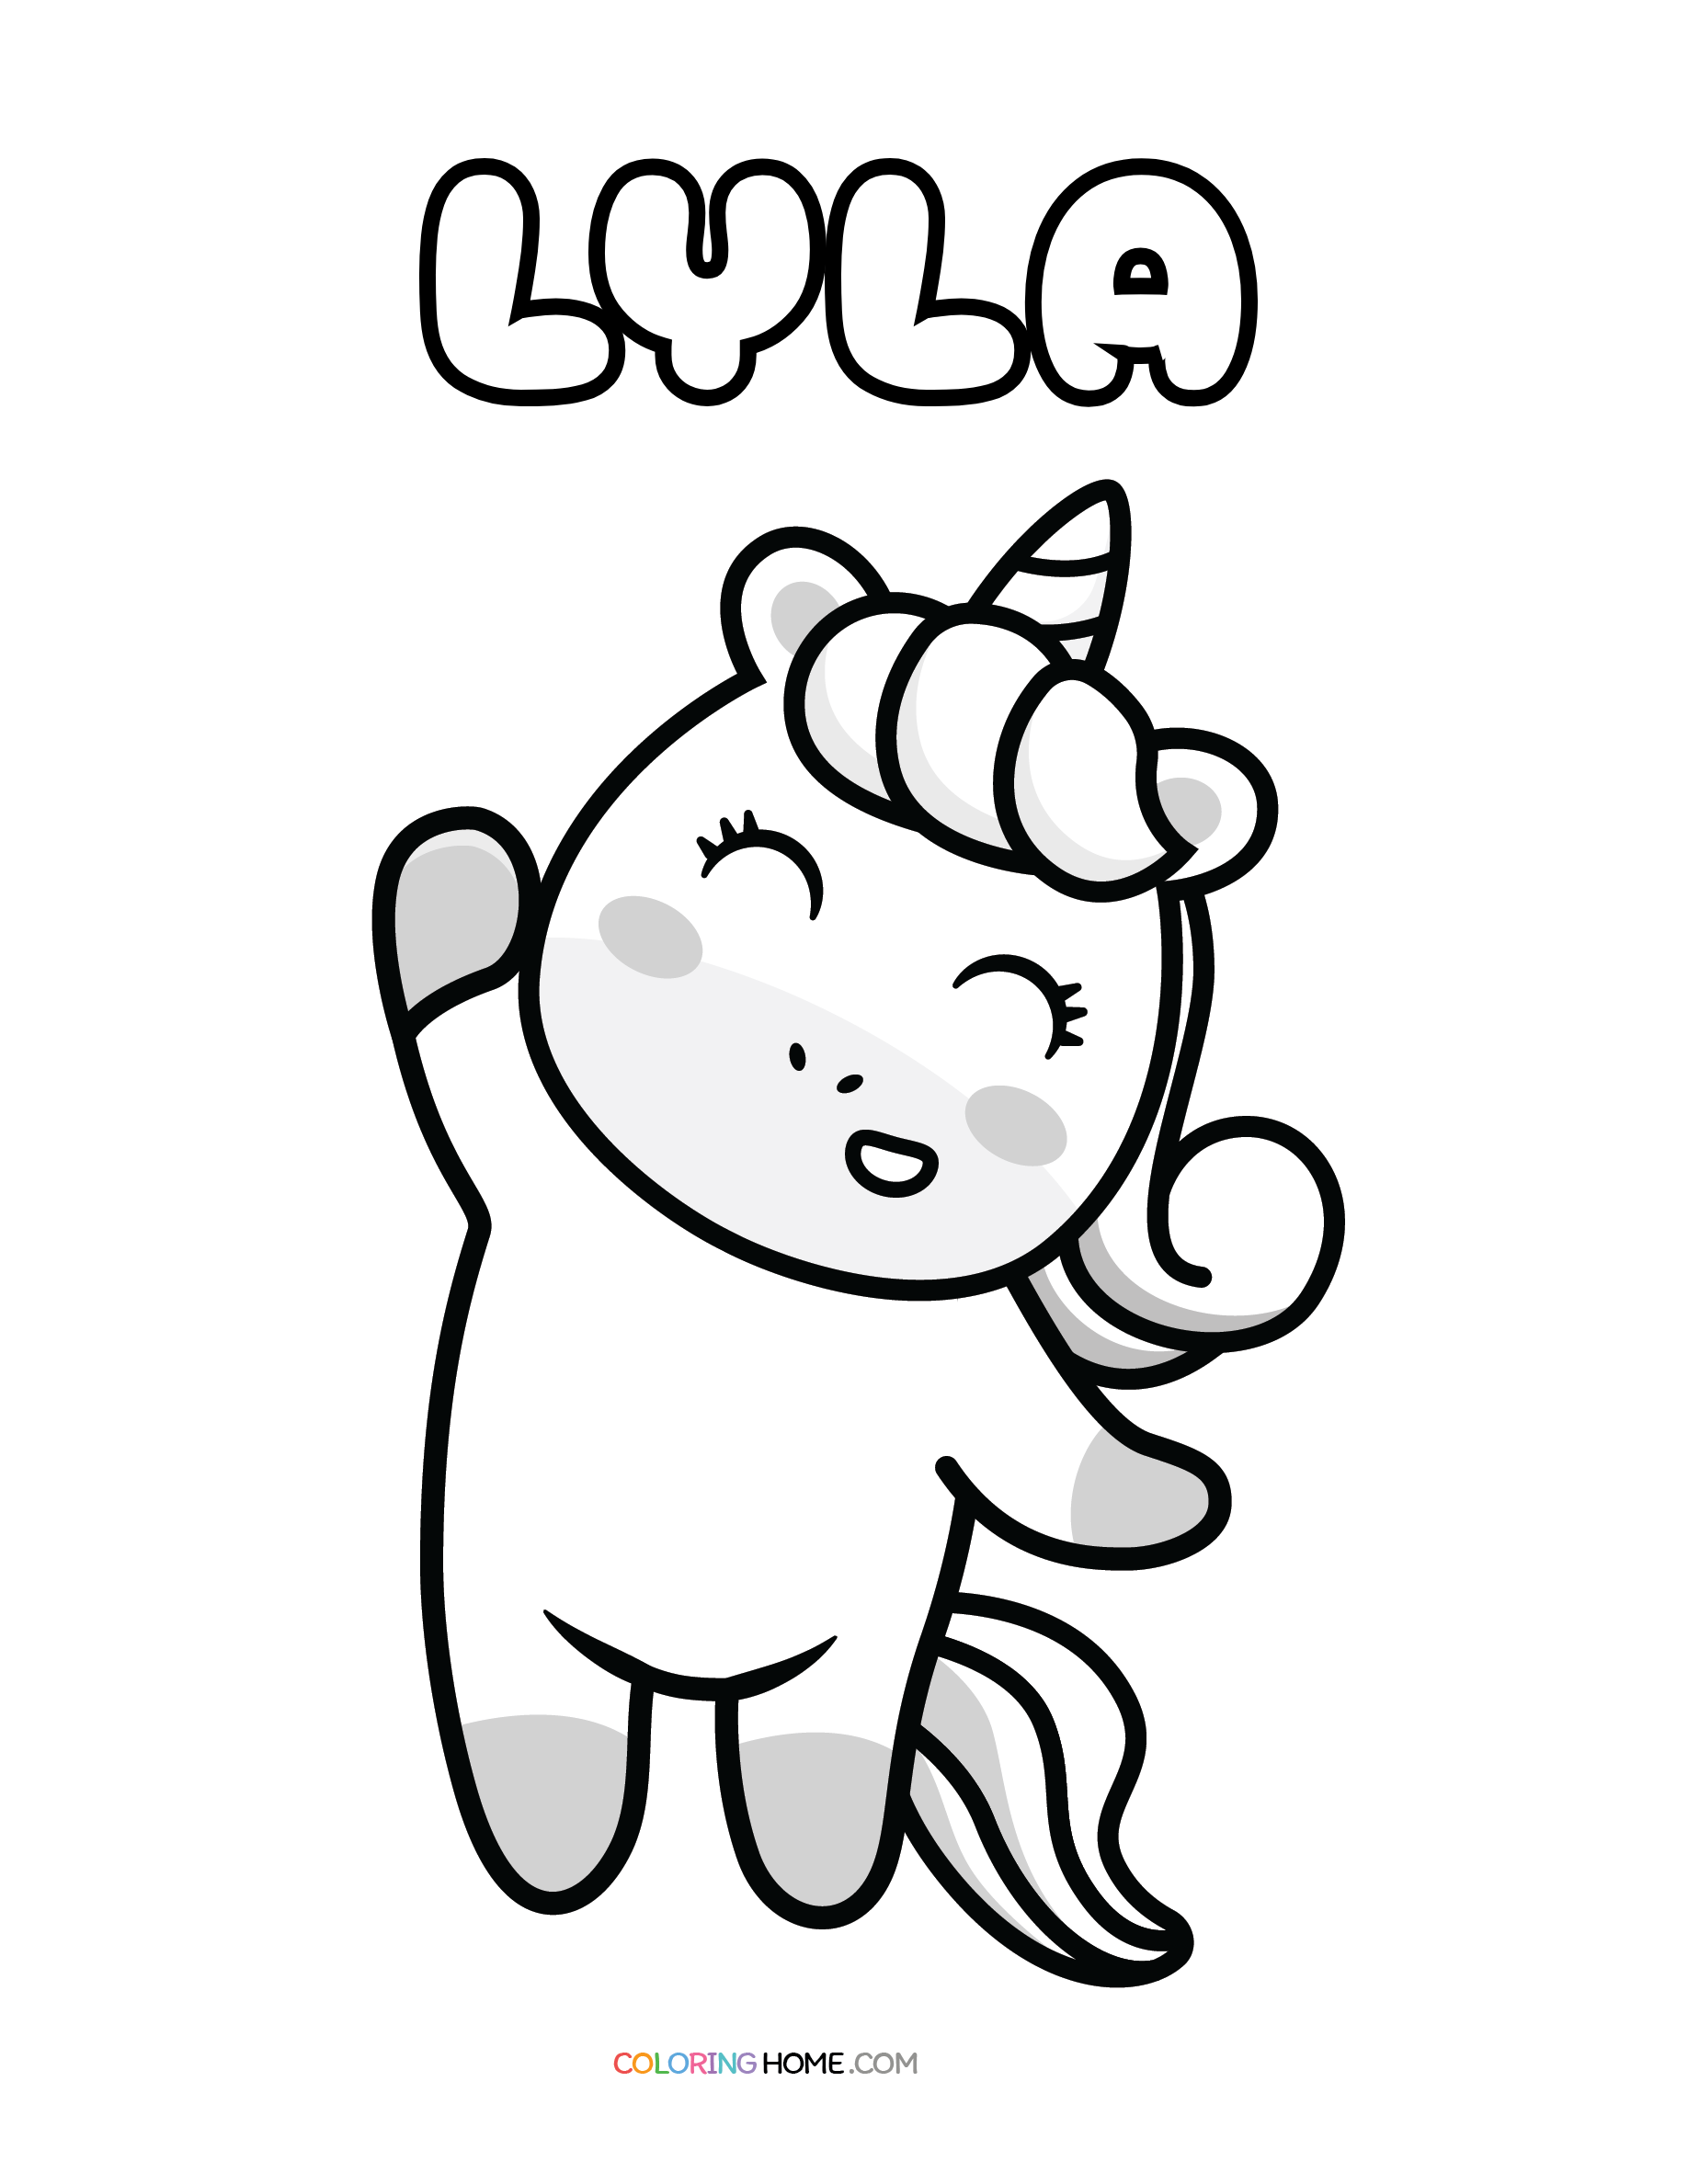 Lyla unicorn coloring page